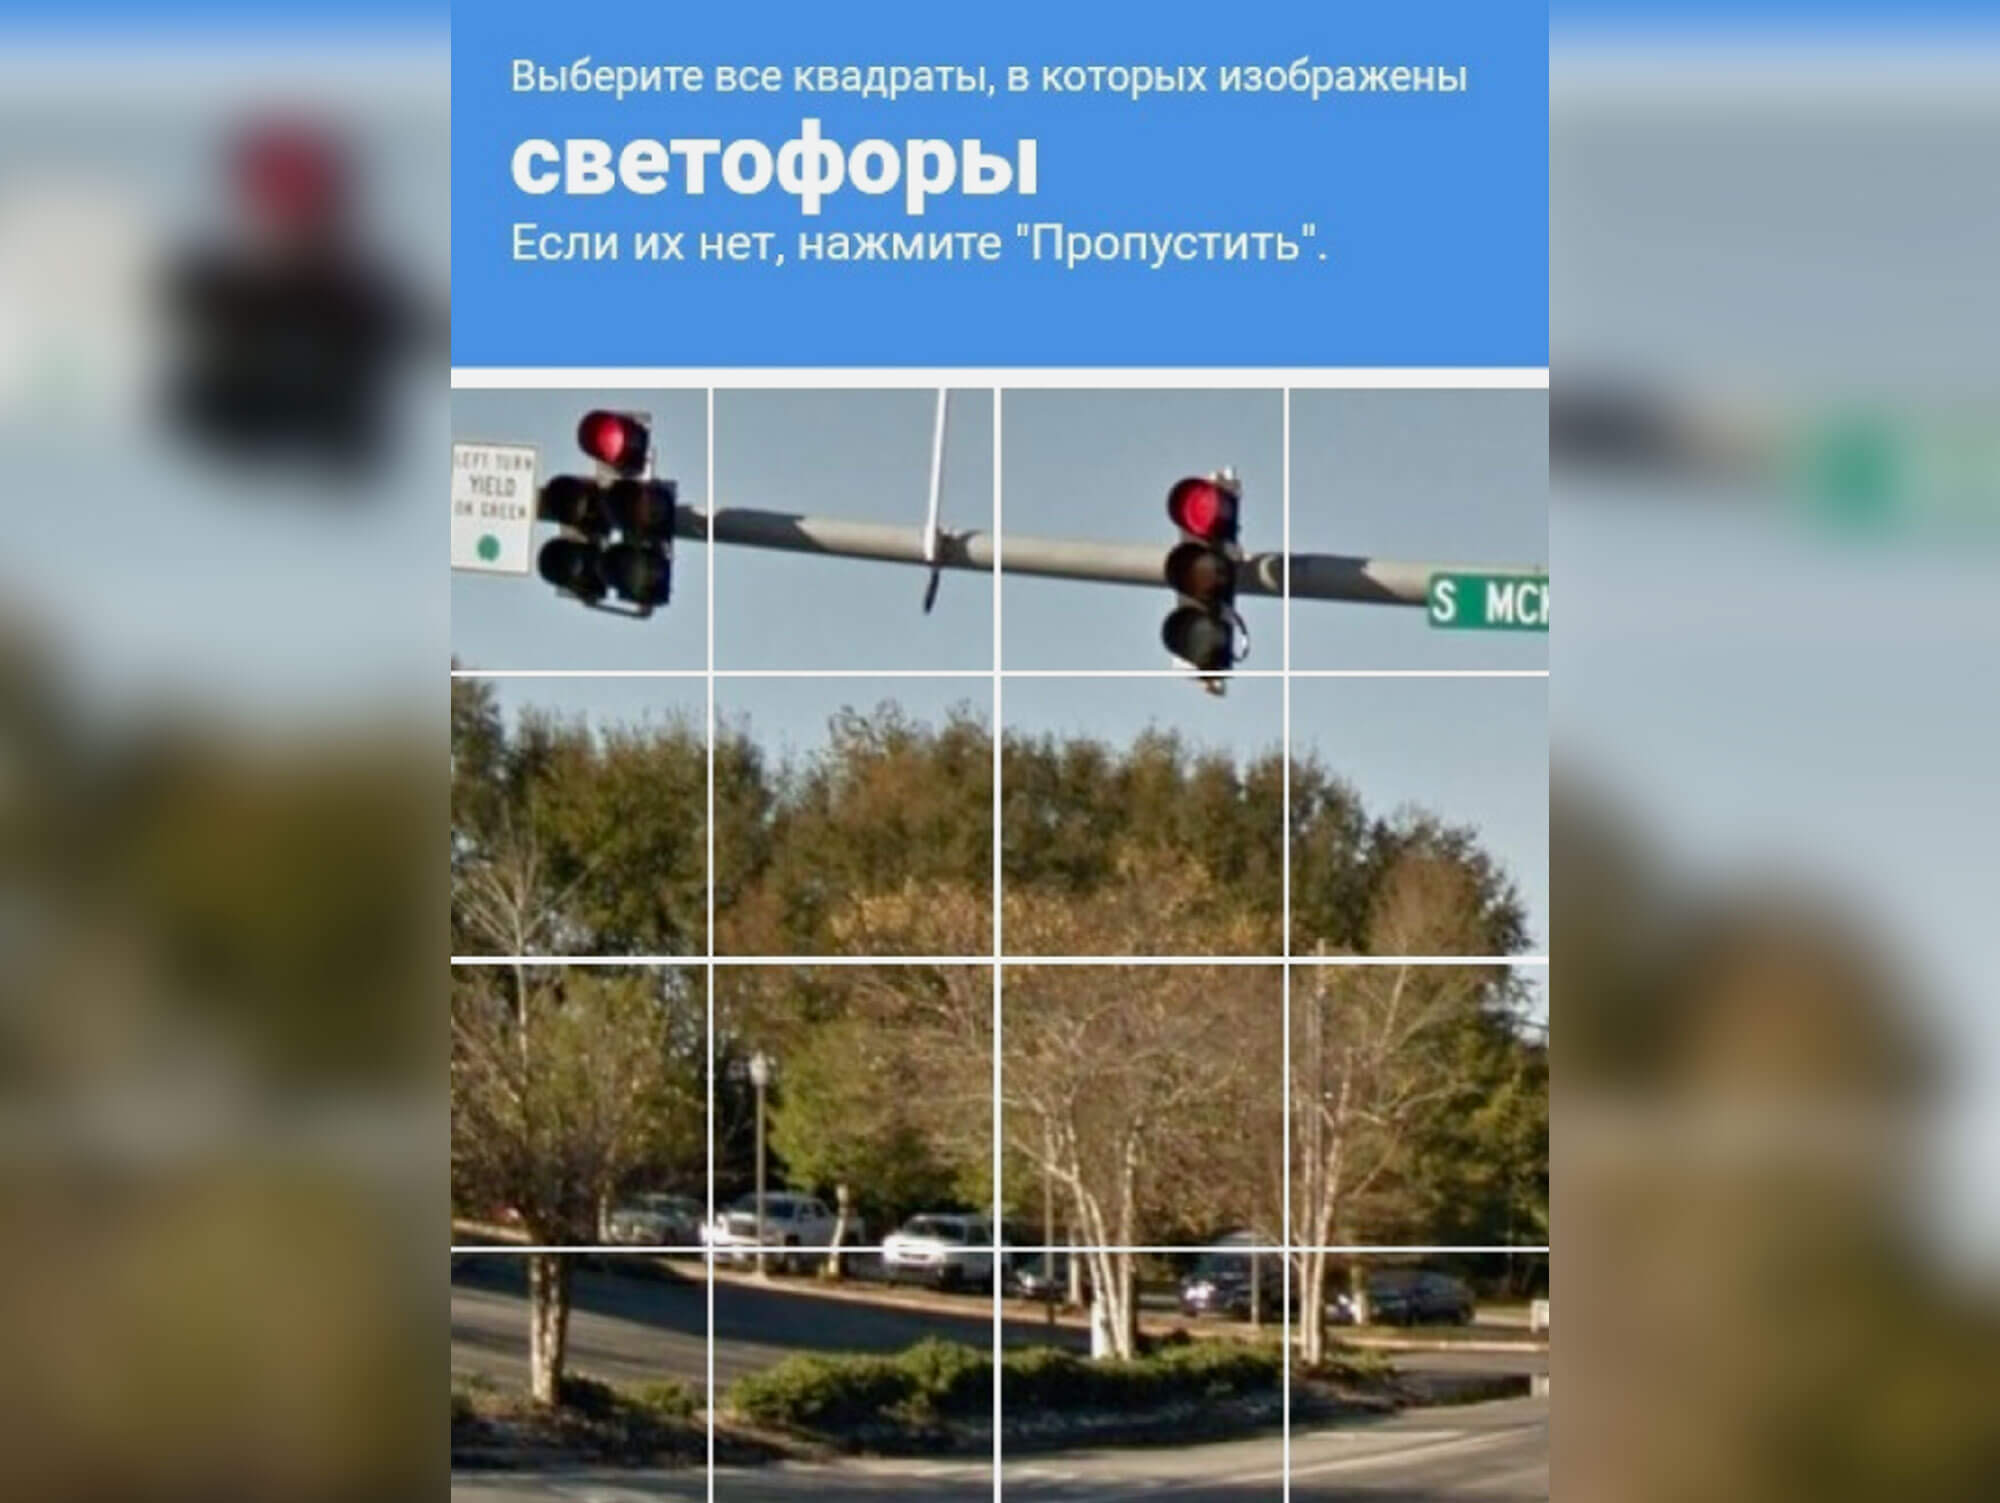 Что такое ReCAPTCHA. Та самая капча со светофорами, которая всех раздражает. Фото.